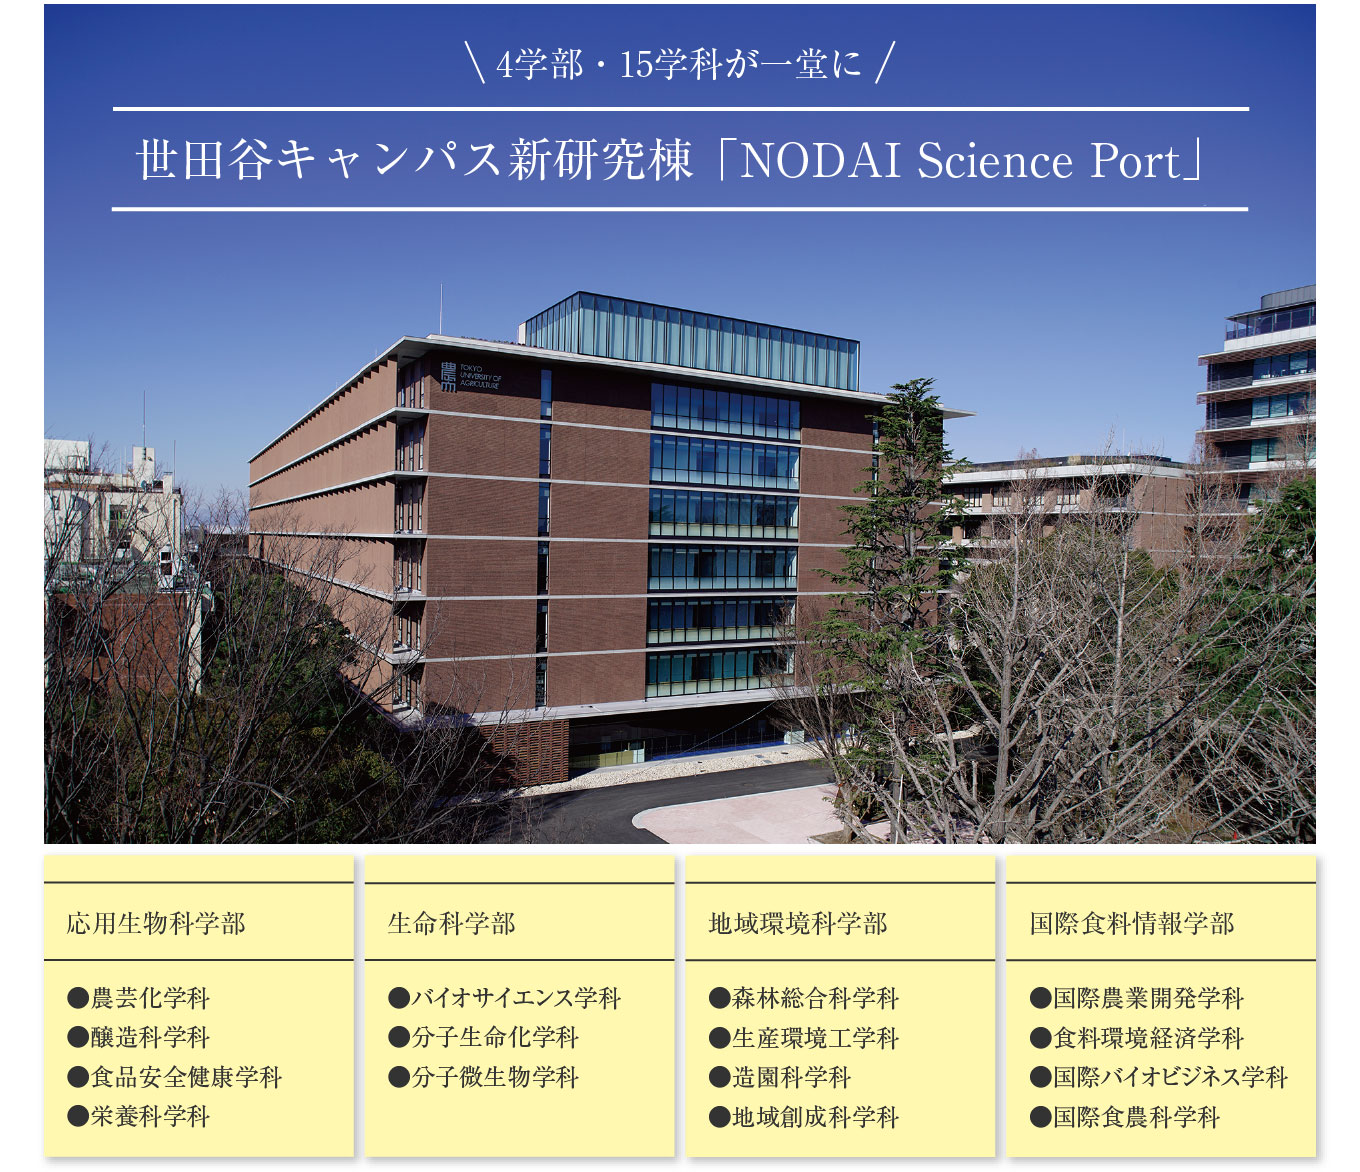 世田谷キャンパス新研究棟「NODAI Science Port」